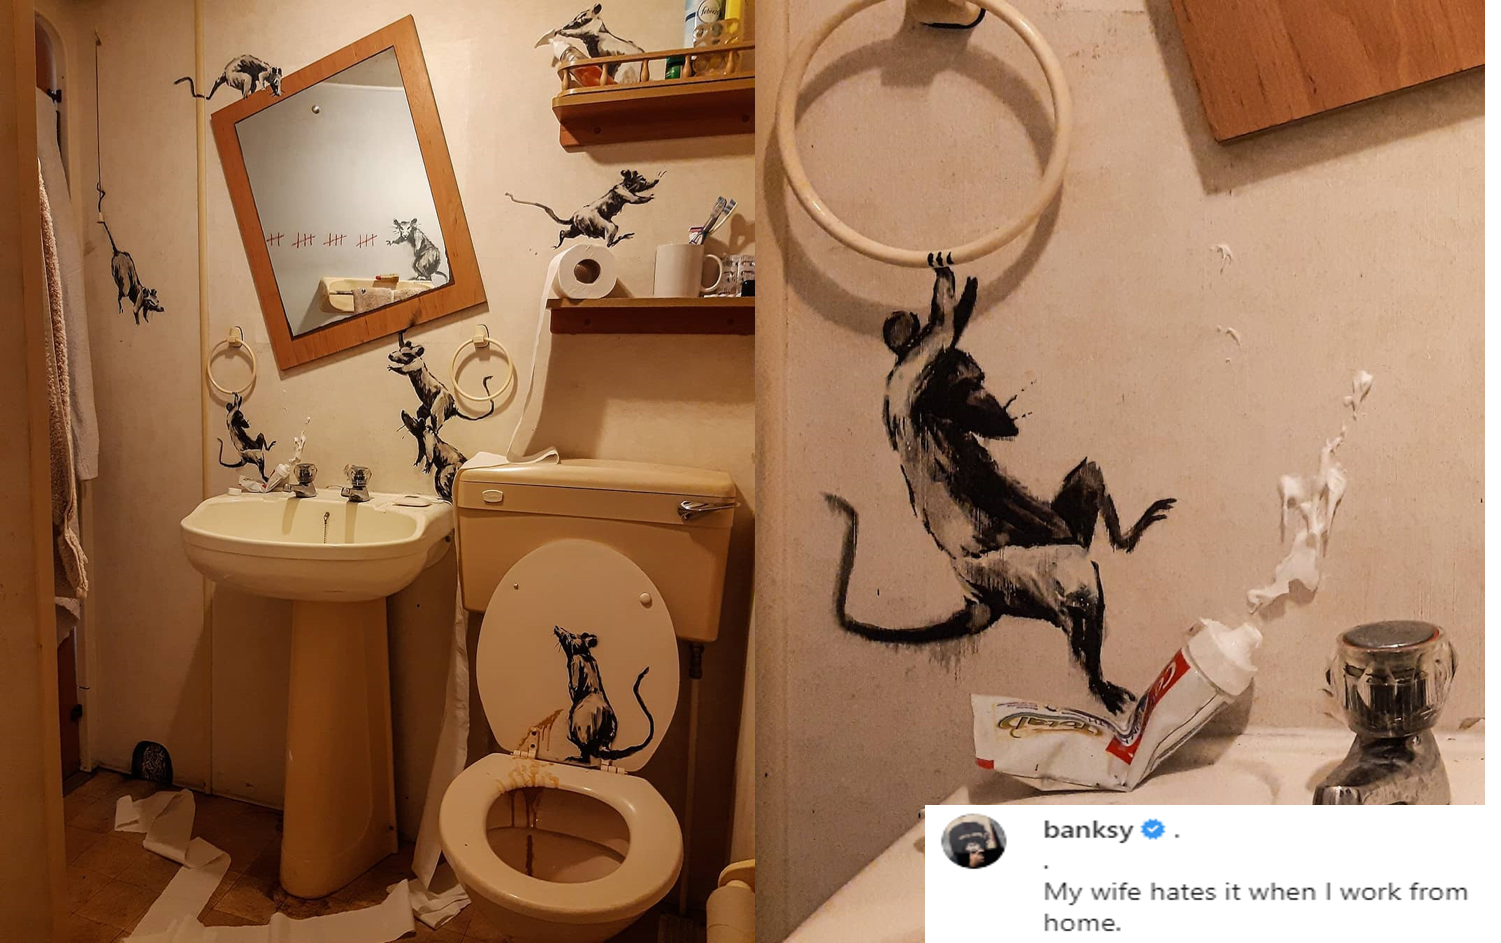 Banksy: “Soția mă urăște când lucrez de acasă”. Cum arată baia artistului